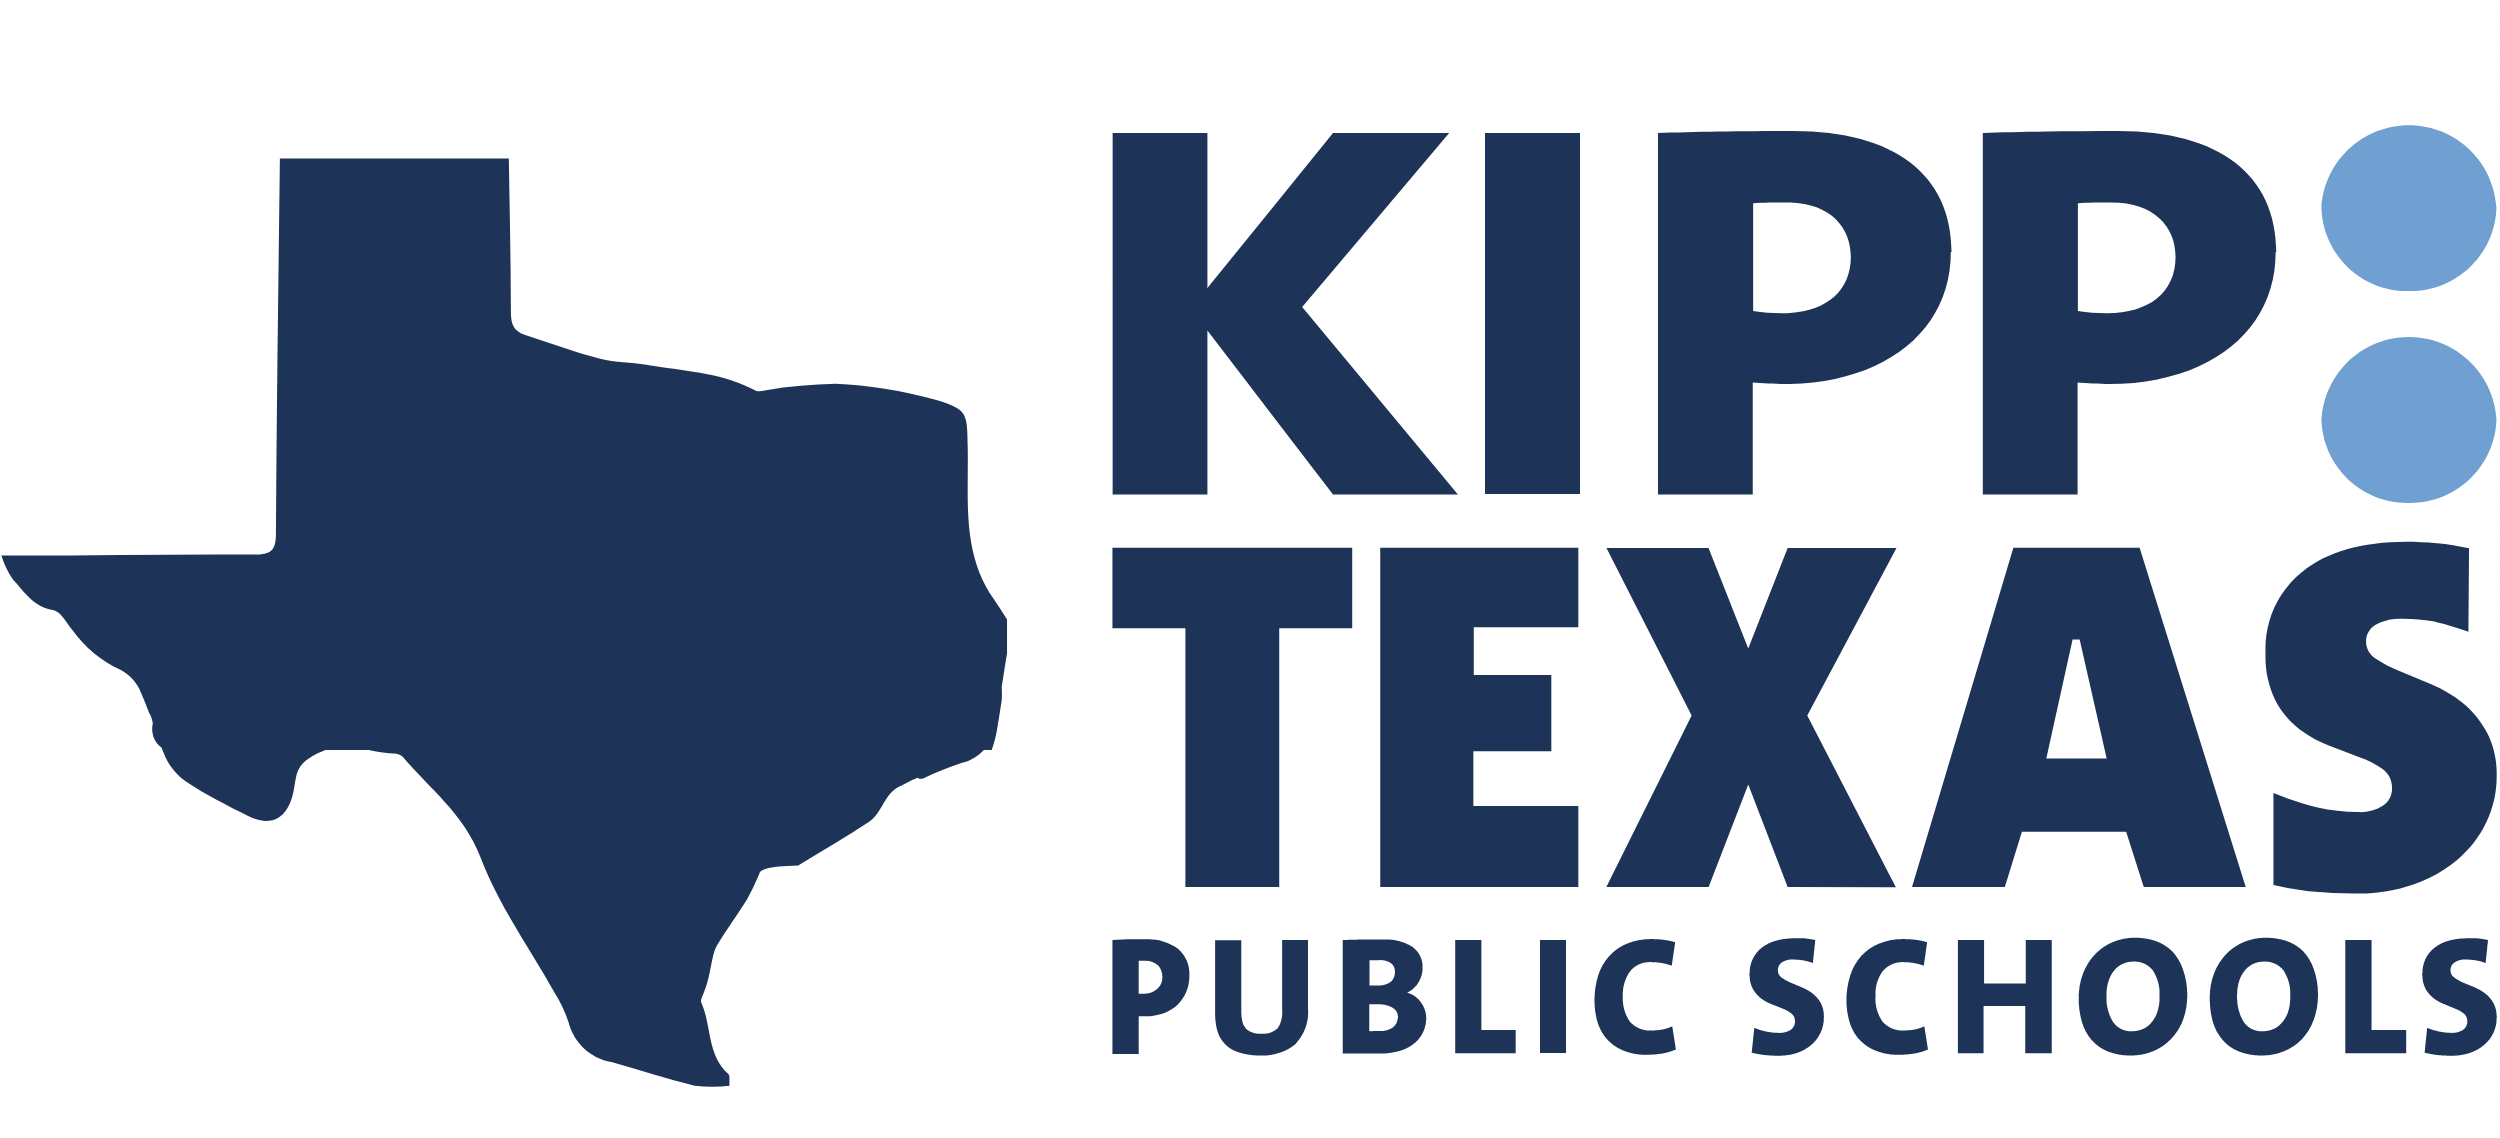 KIPP Texas